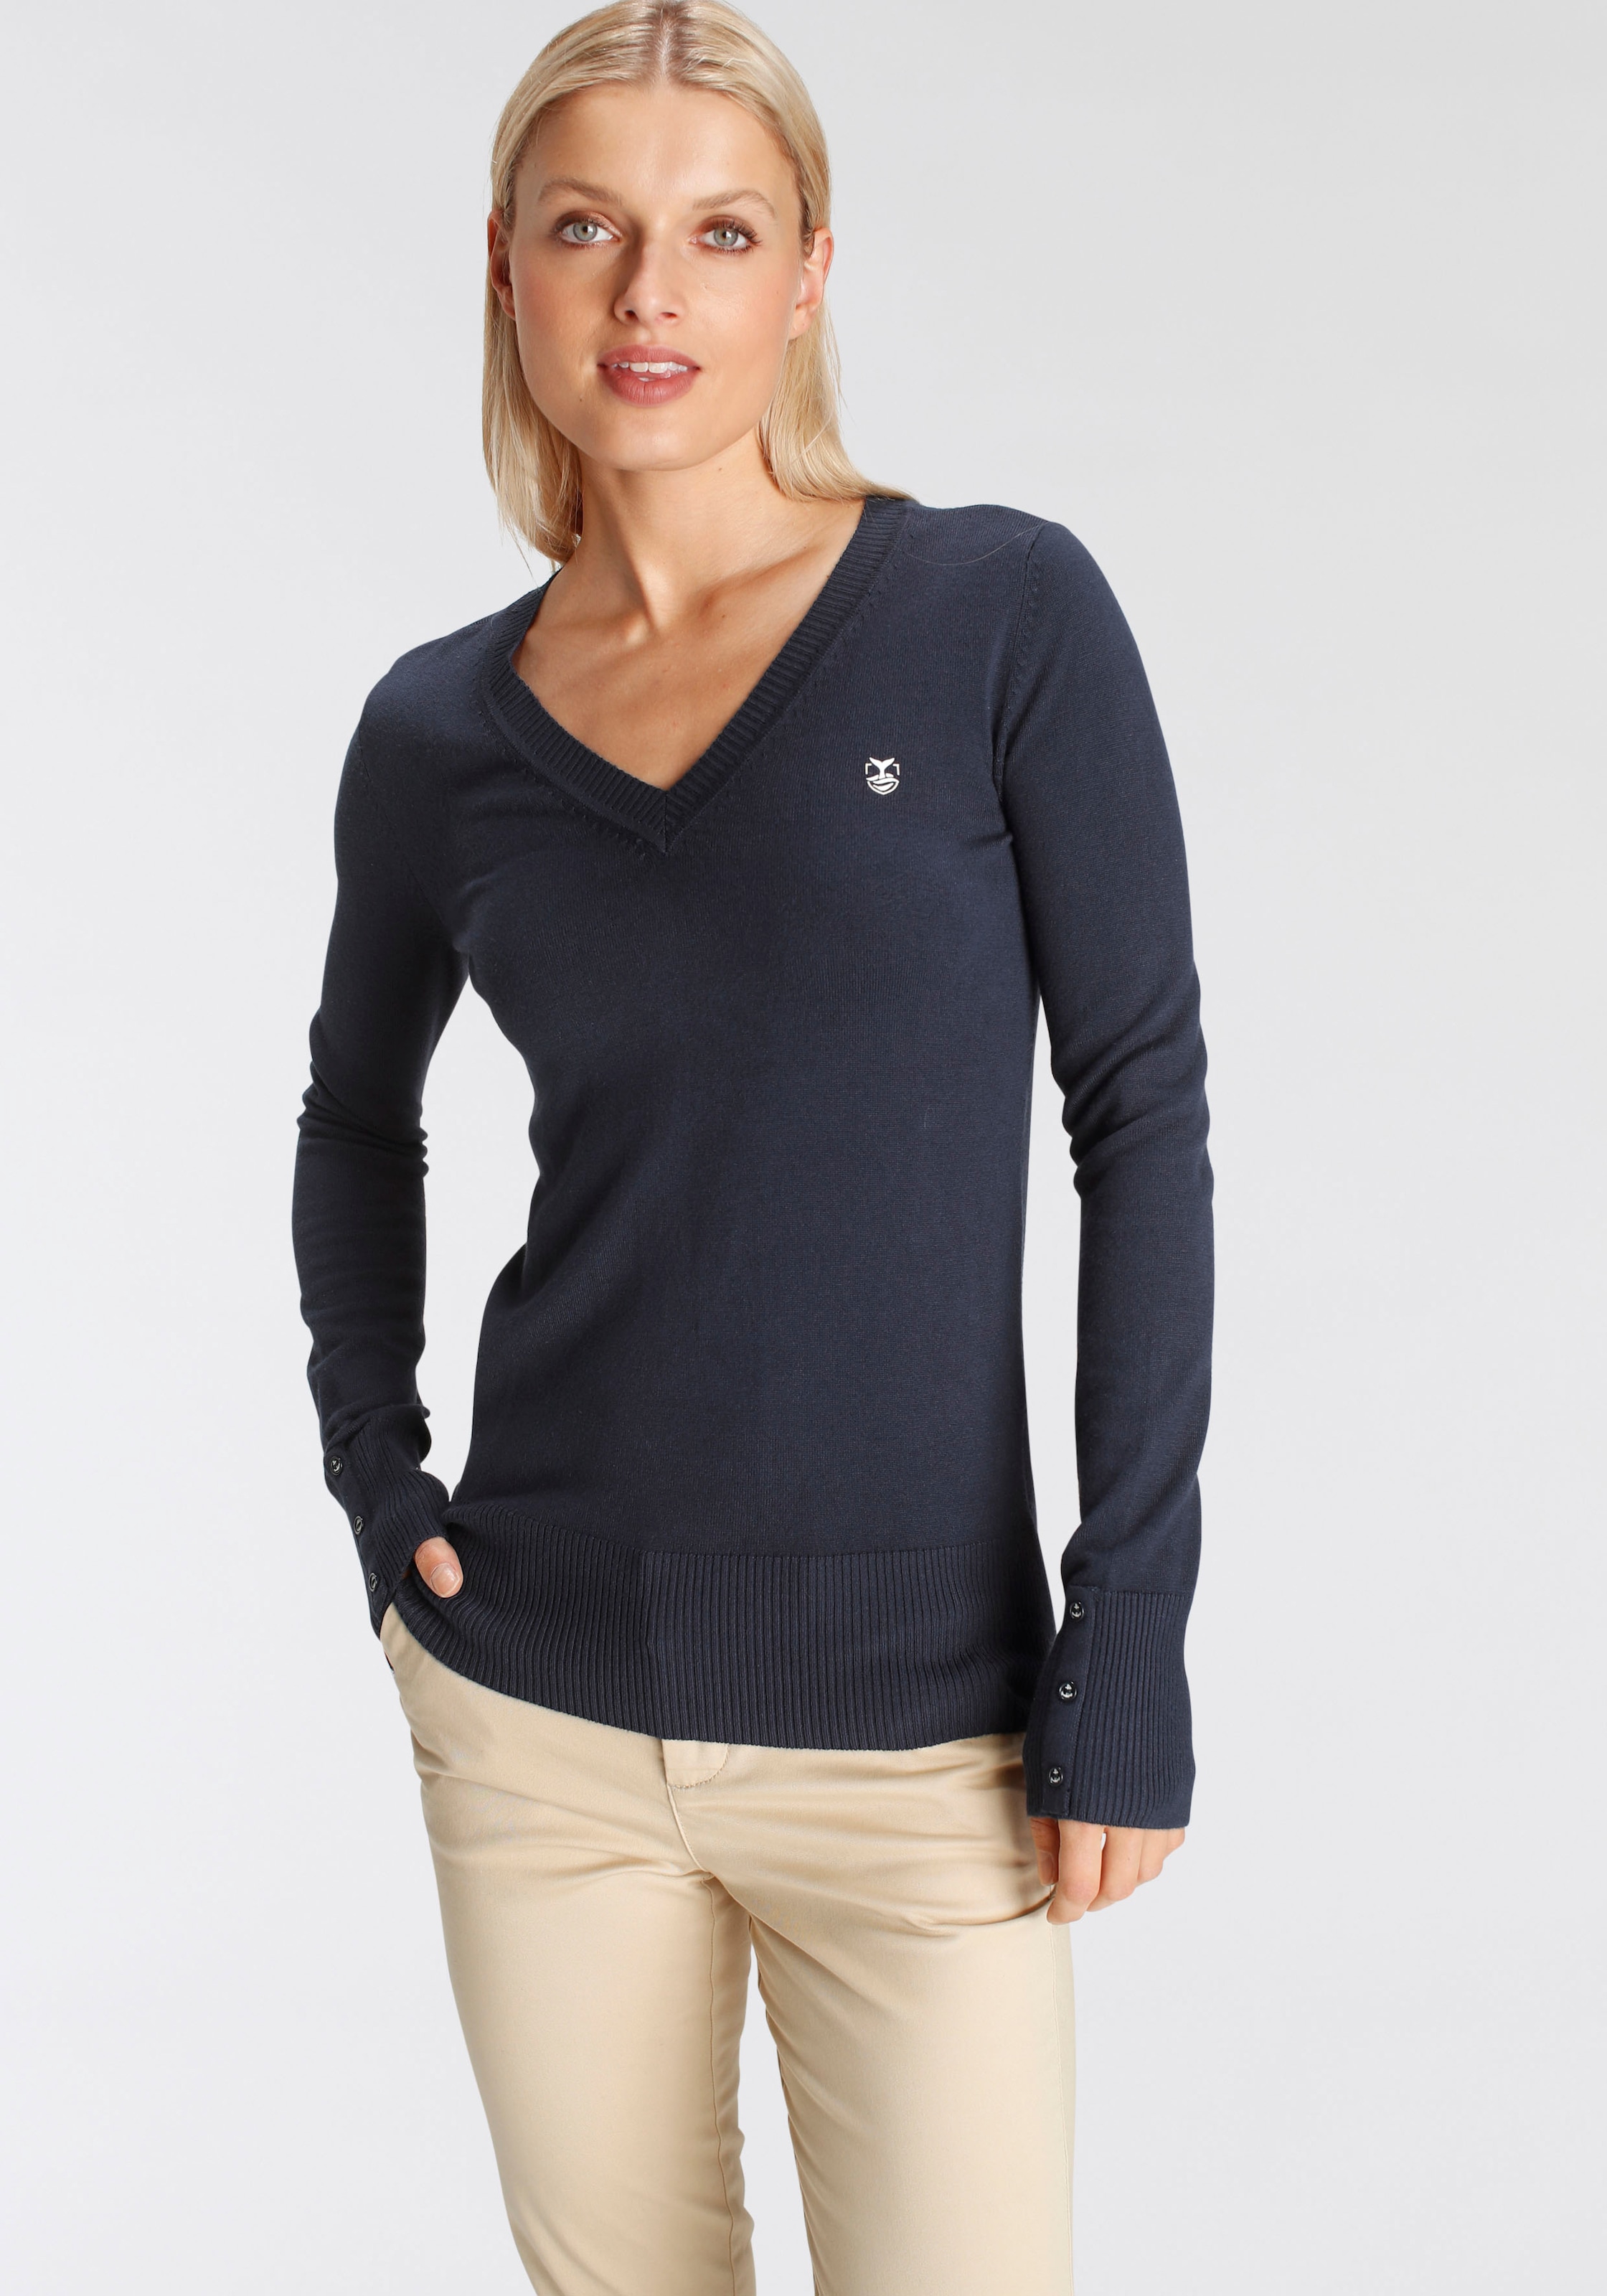 DELMAO V-Ausschnitt-Pullover, mit kleinem Logodruck auf der Brust